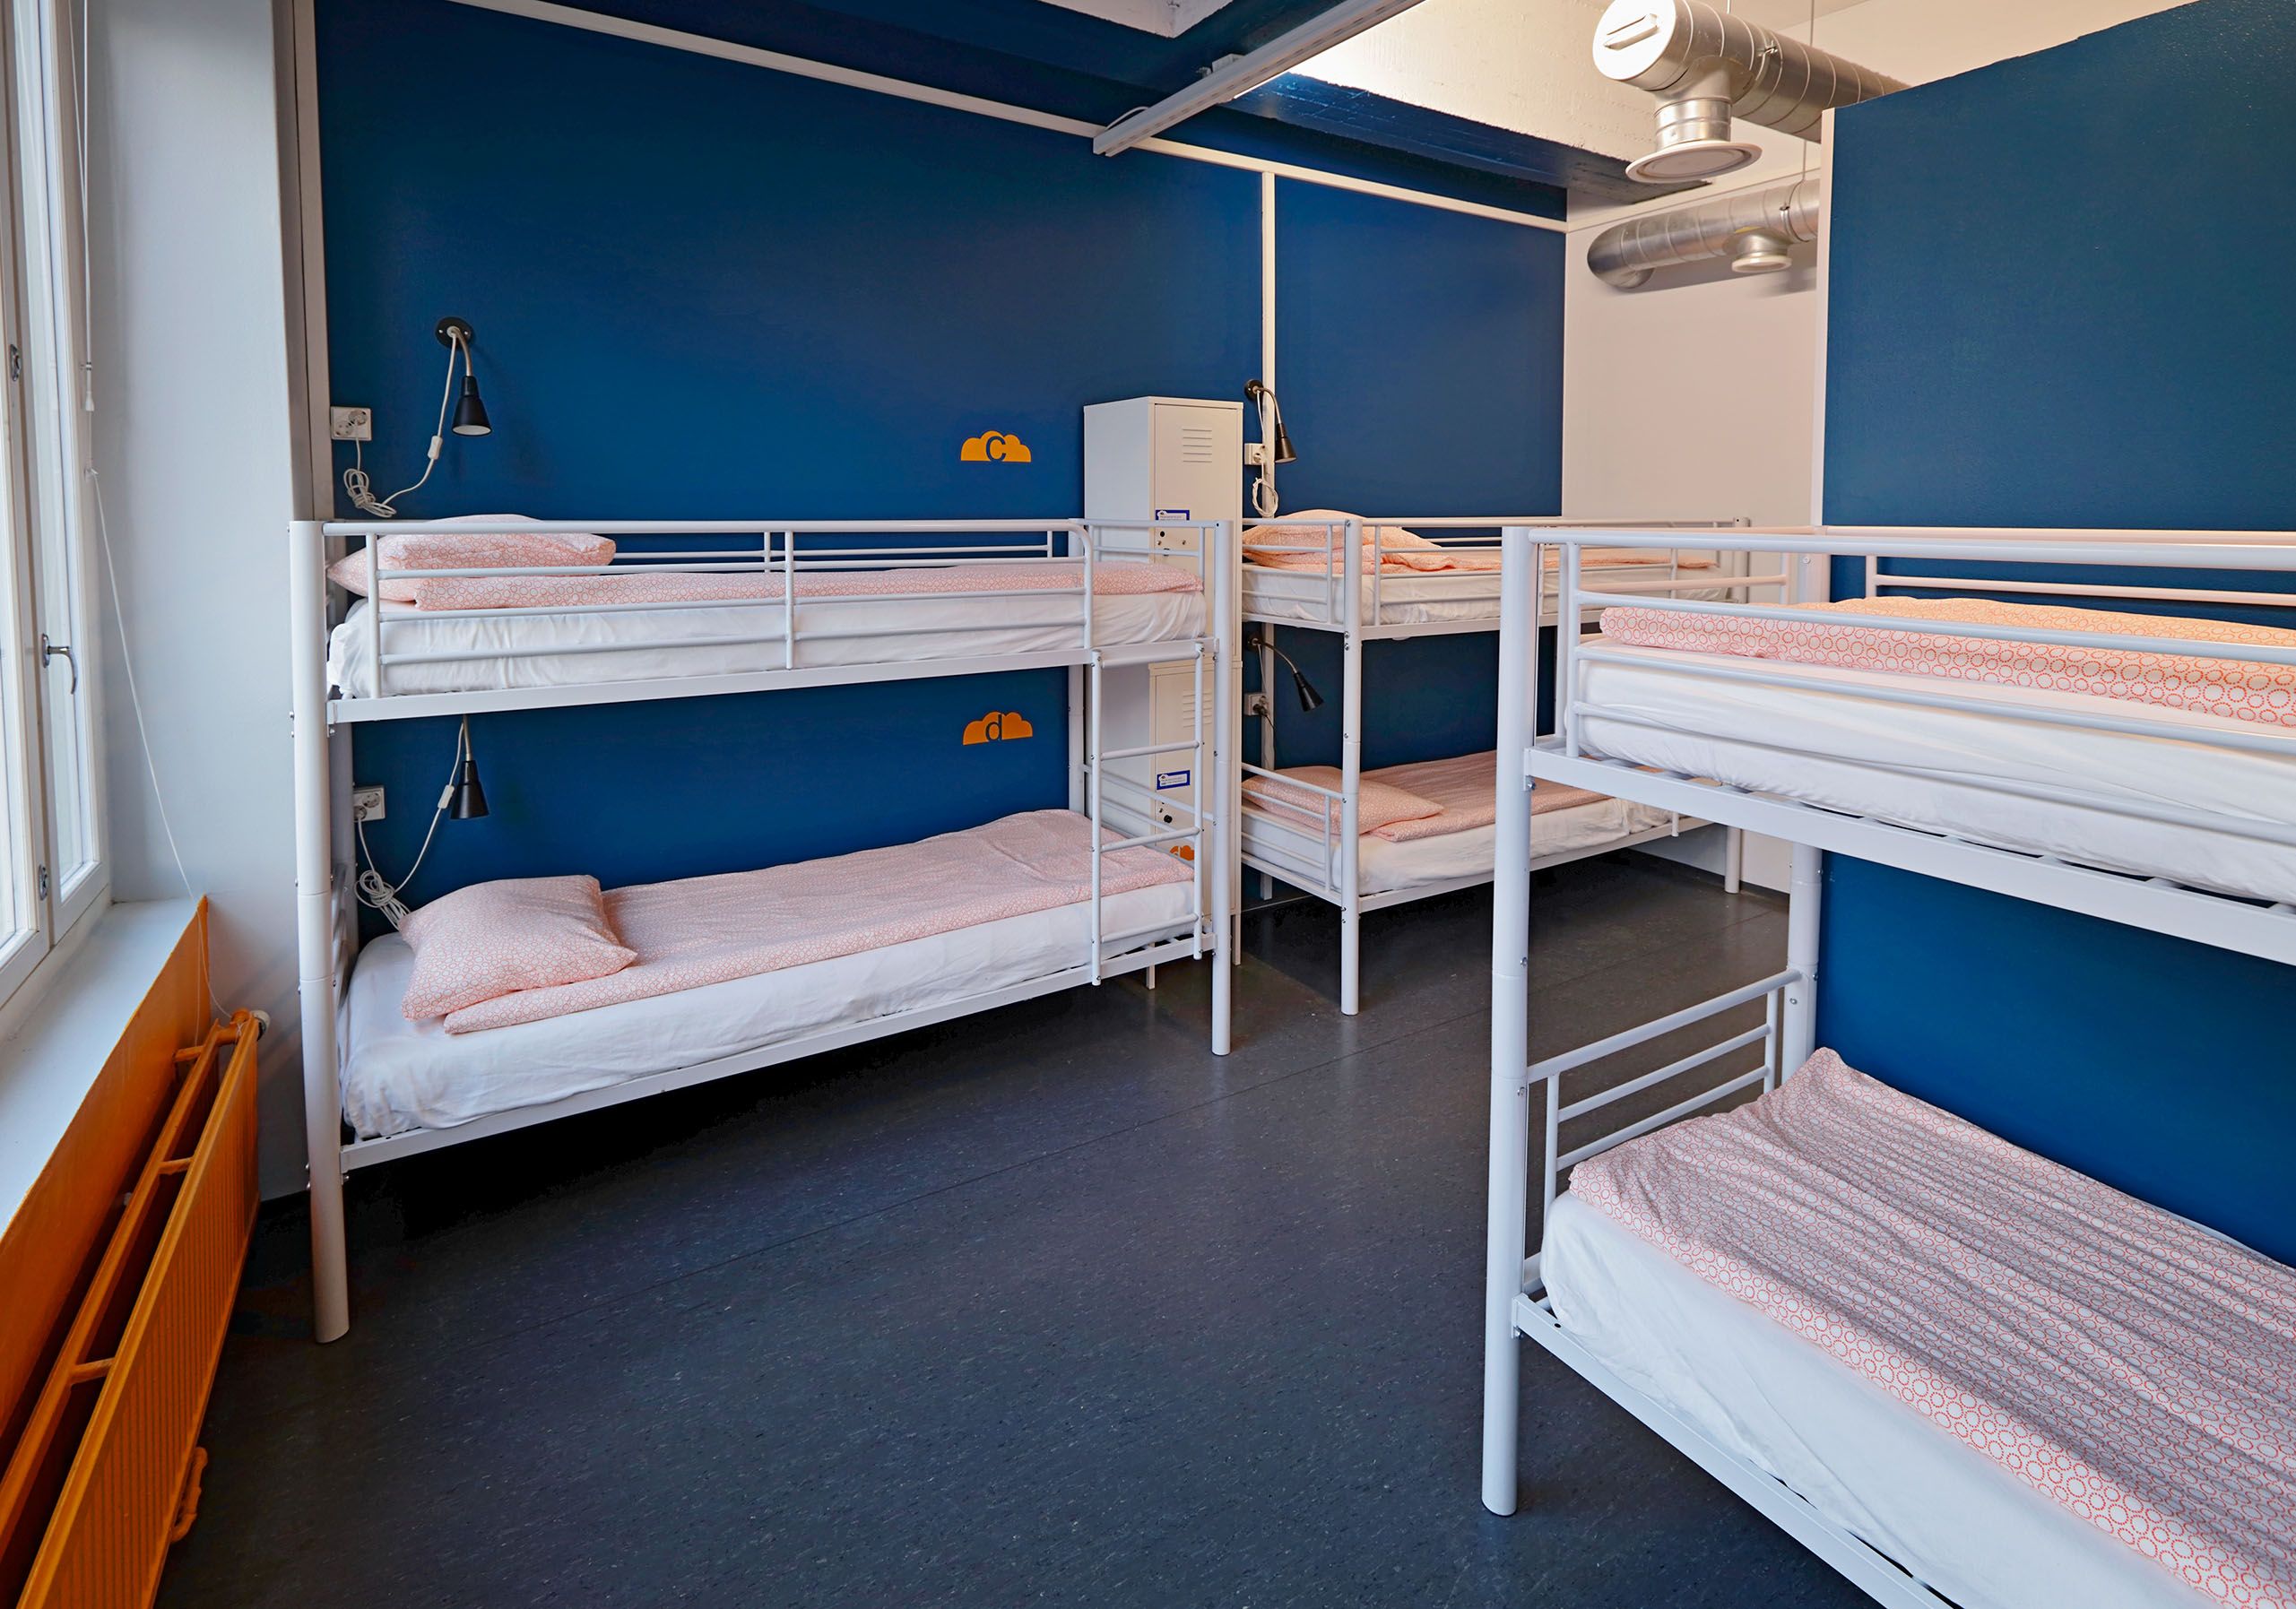 8 Bed Mixed Dormitory - Cheapsleep.fi